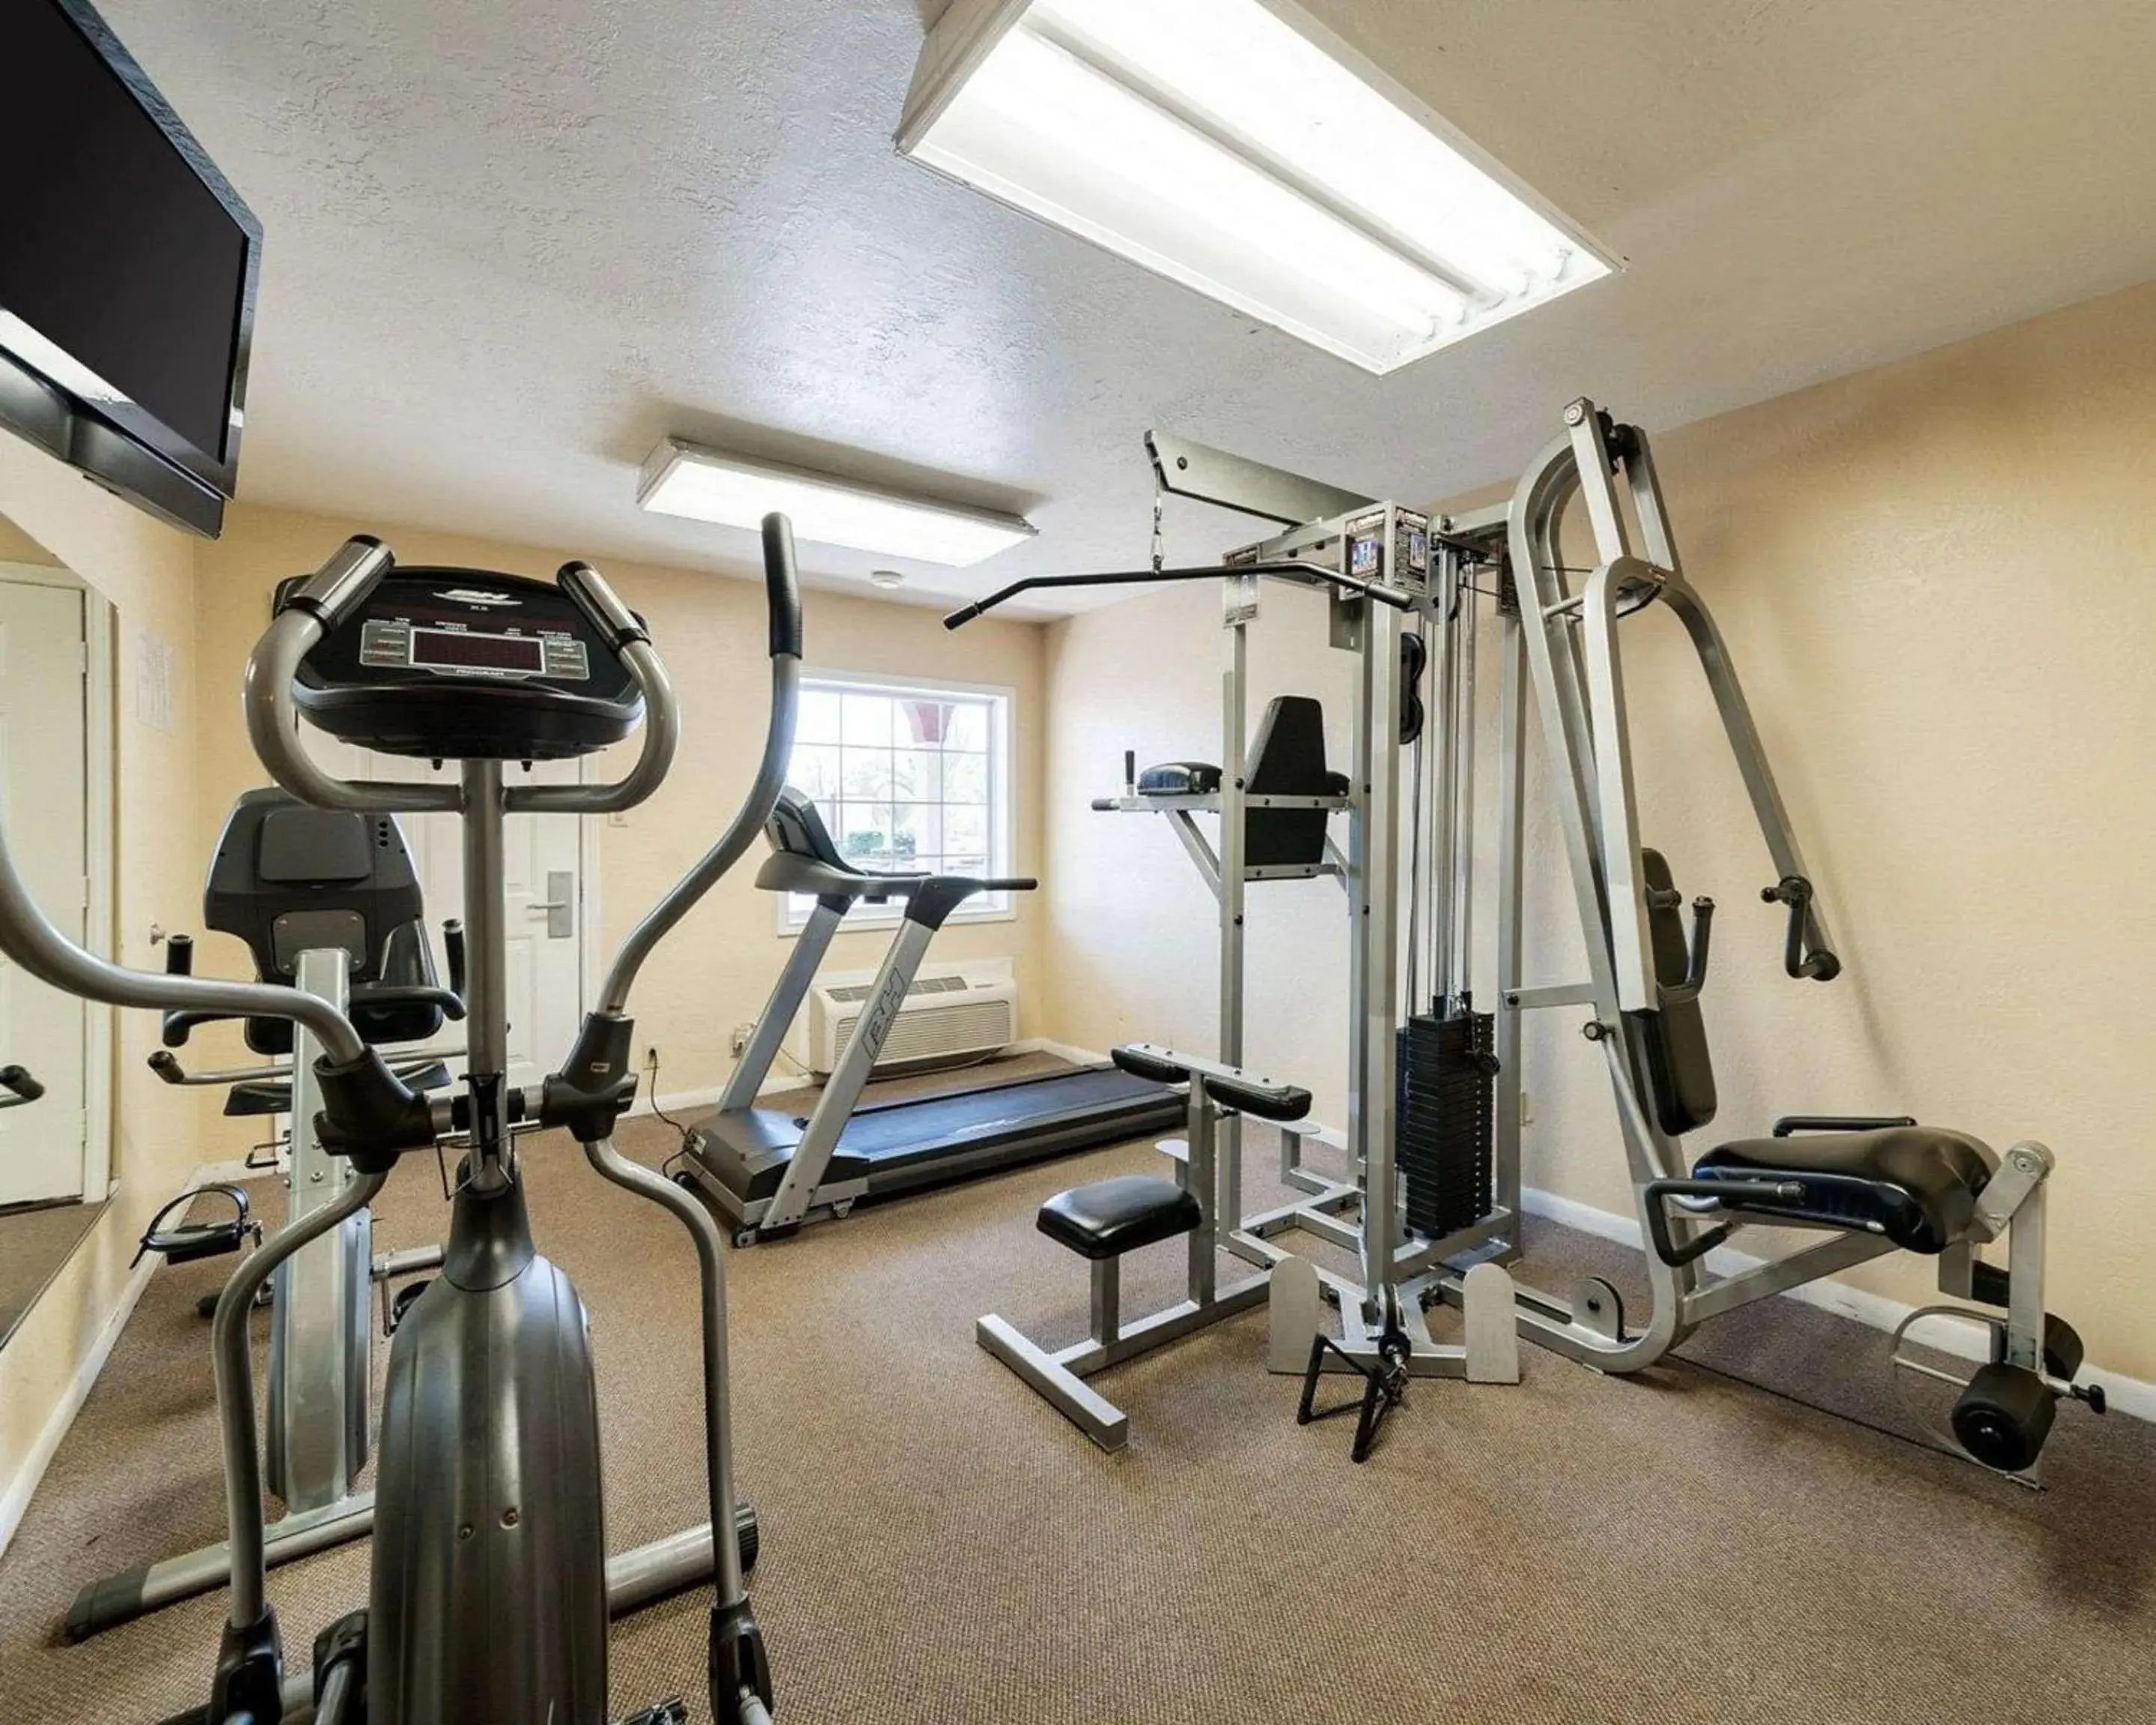 Fitness centre/facilities, Fitness Center/Facilities in Econo Lodge Jasper